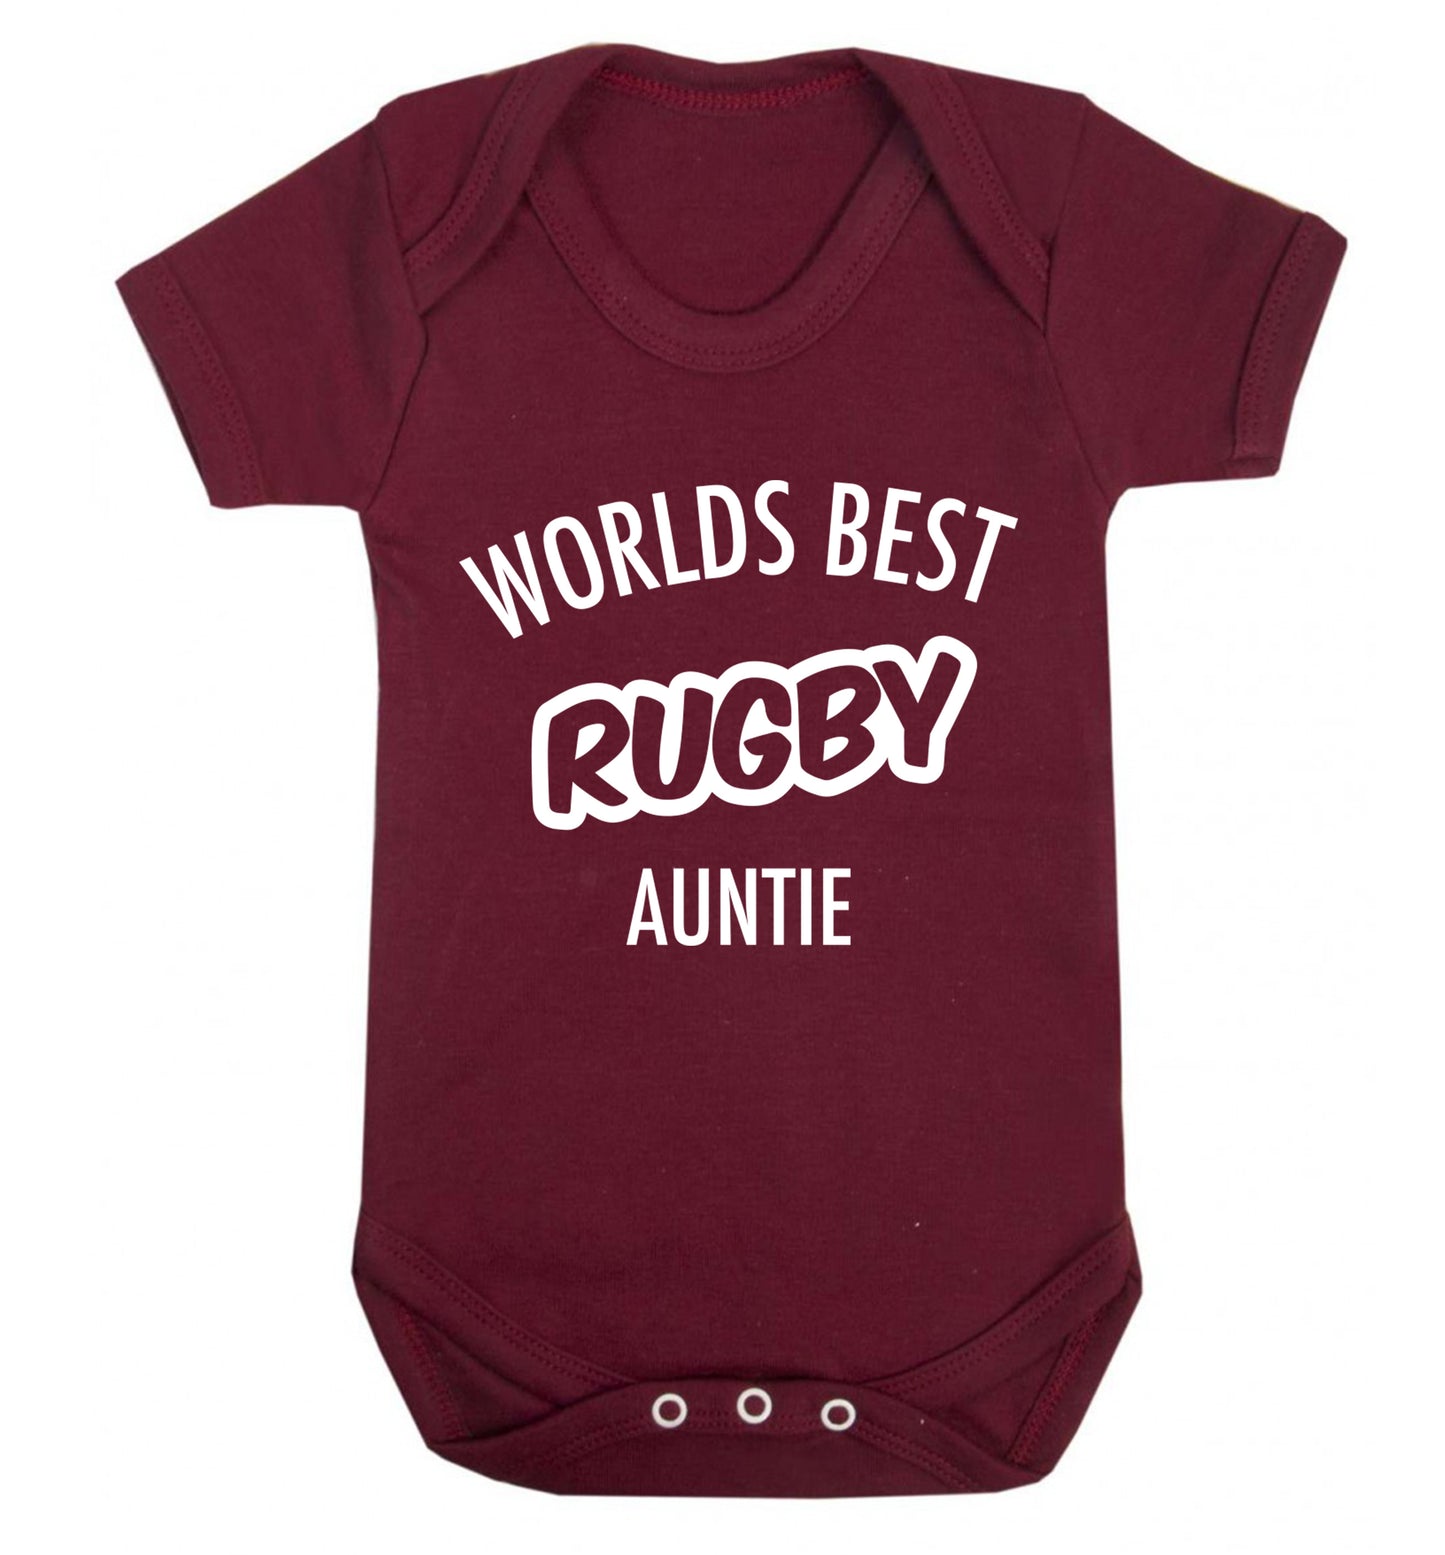 Worlds best rugby auntie Baby Vest maroon 18-24 months